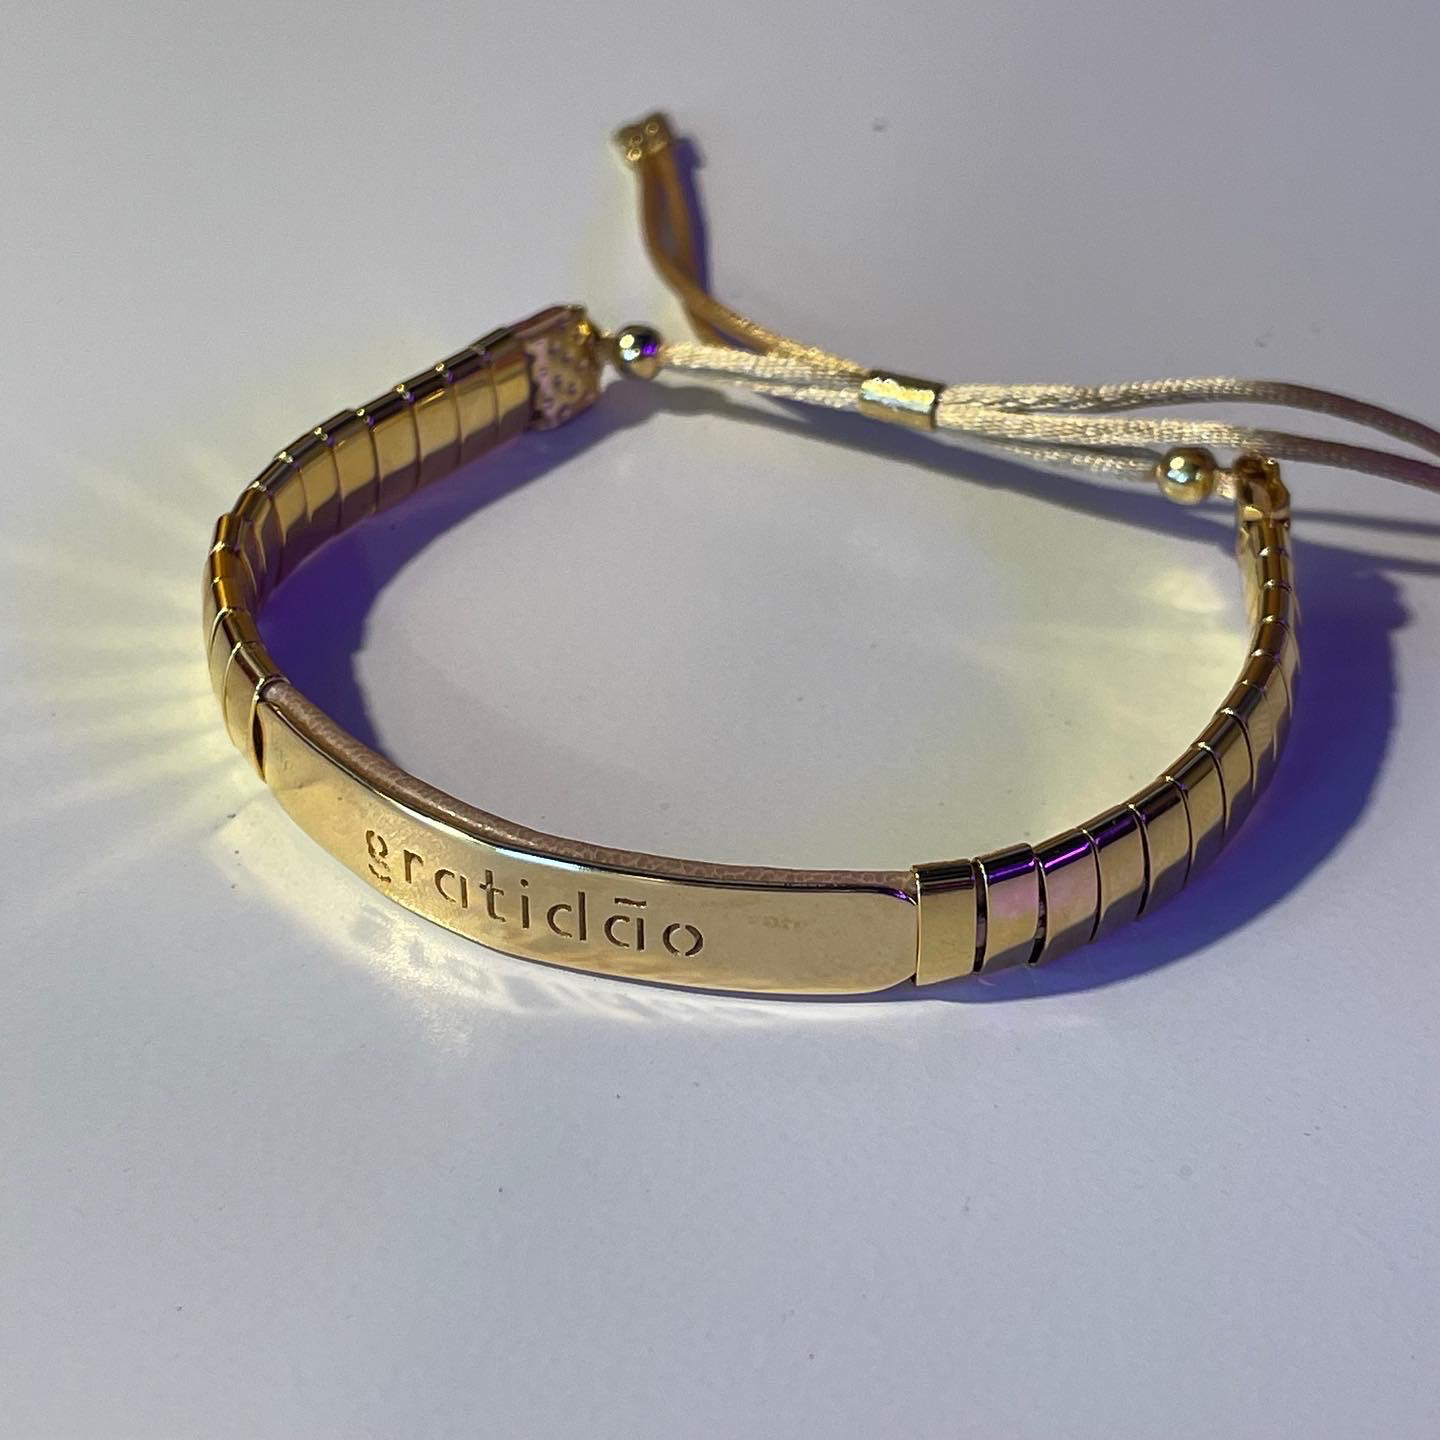 Matilde bracelet